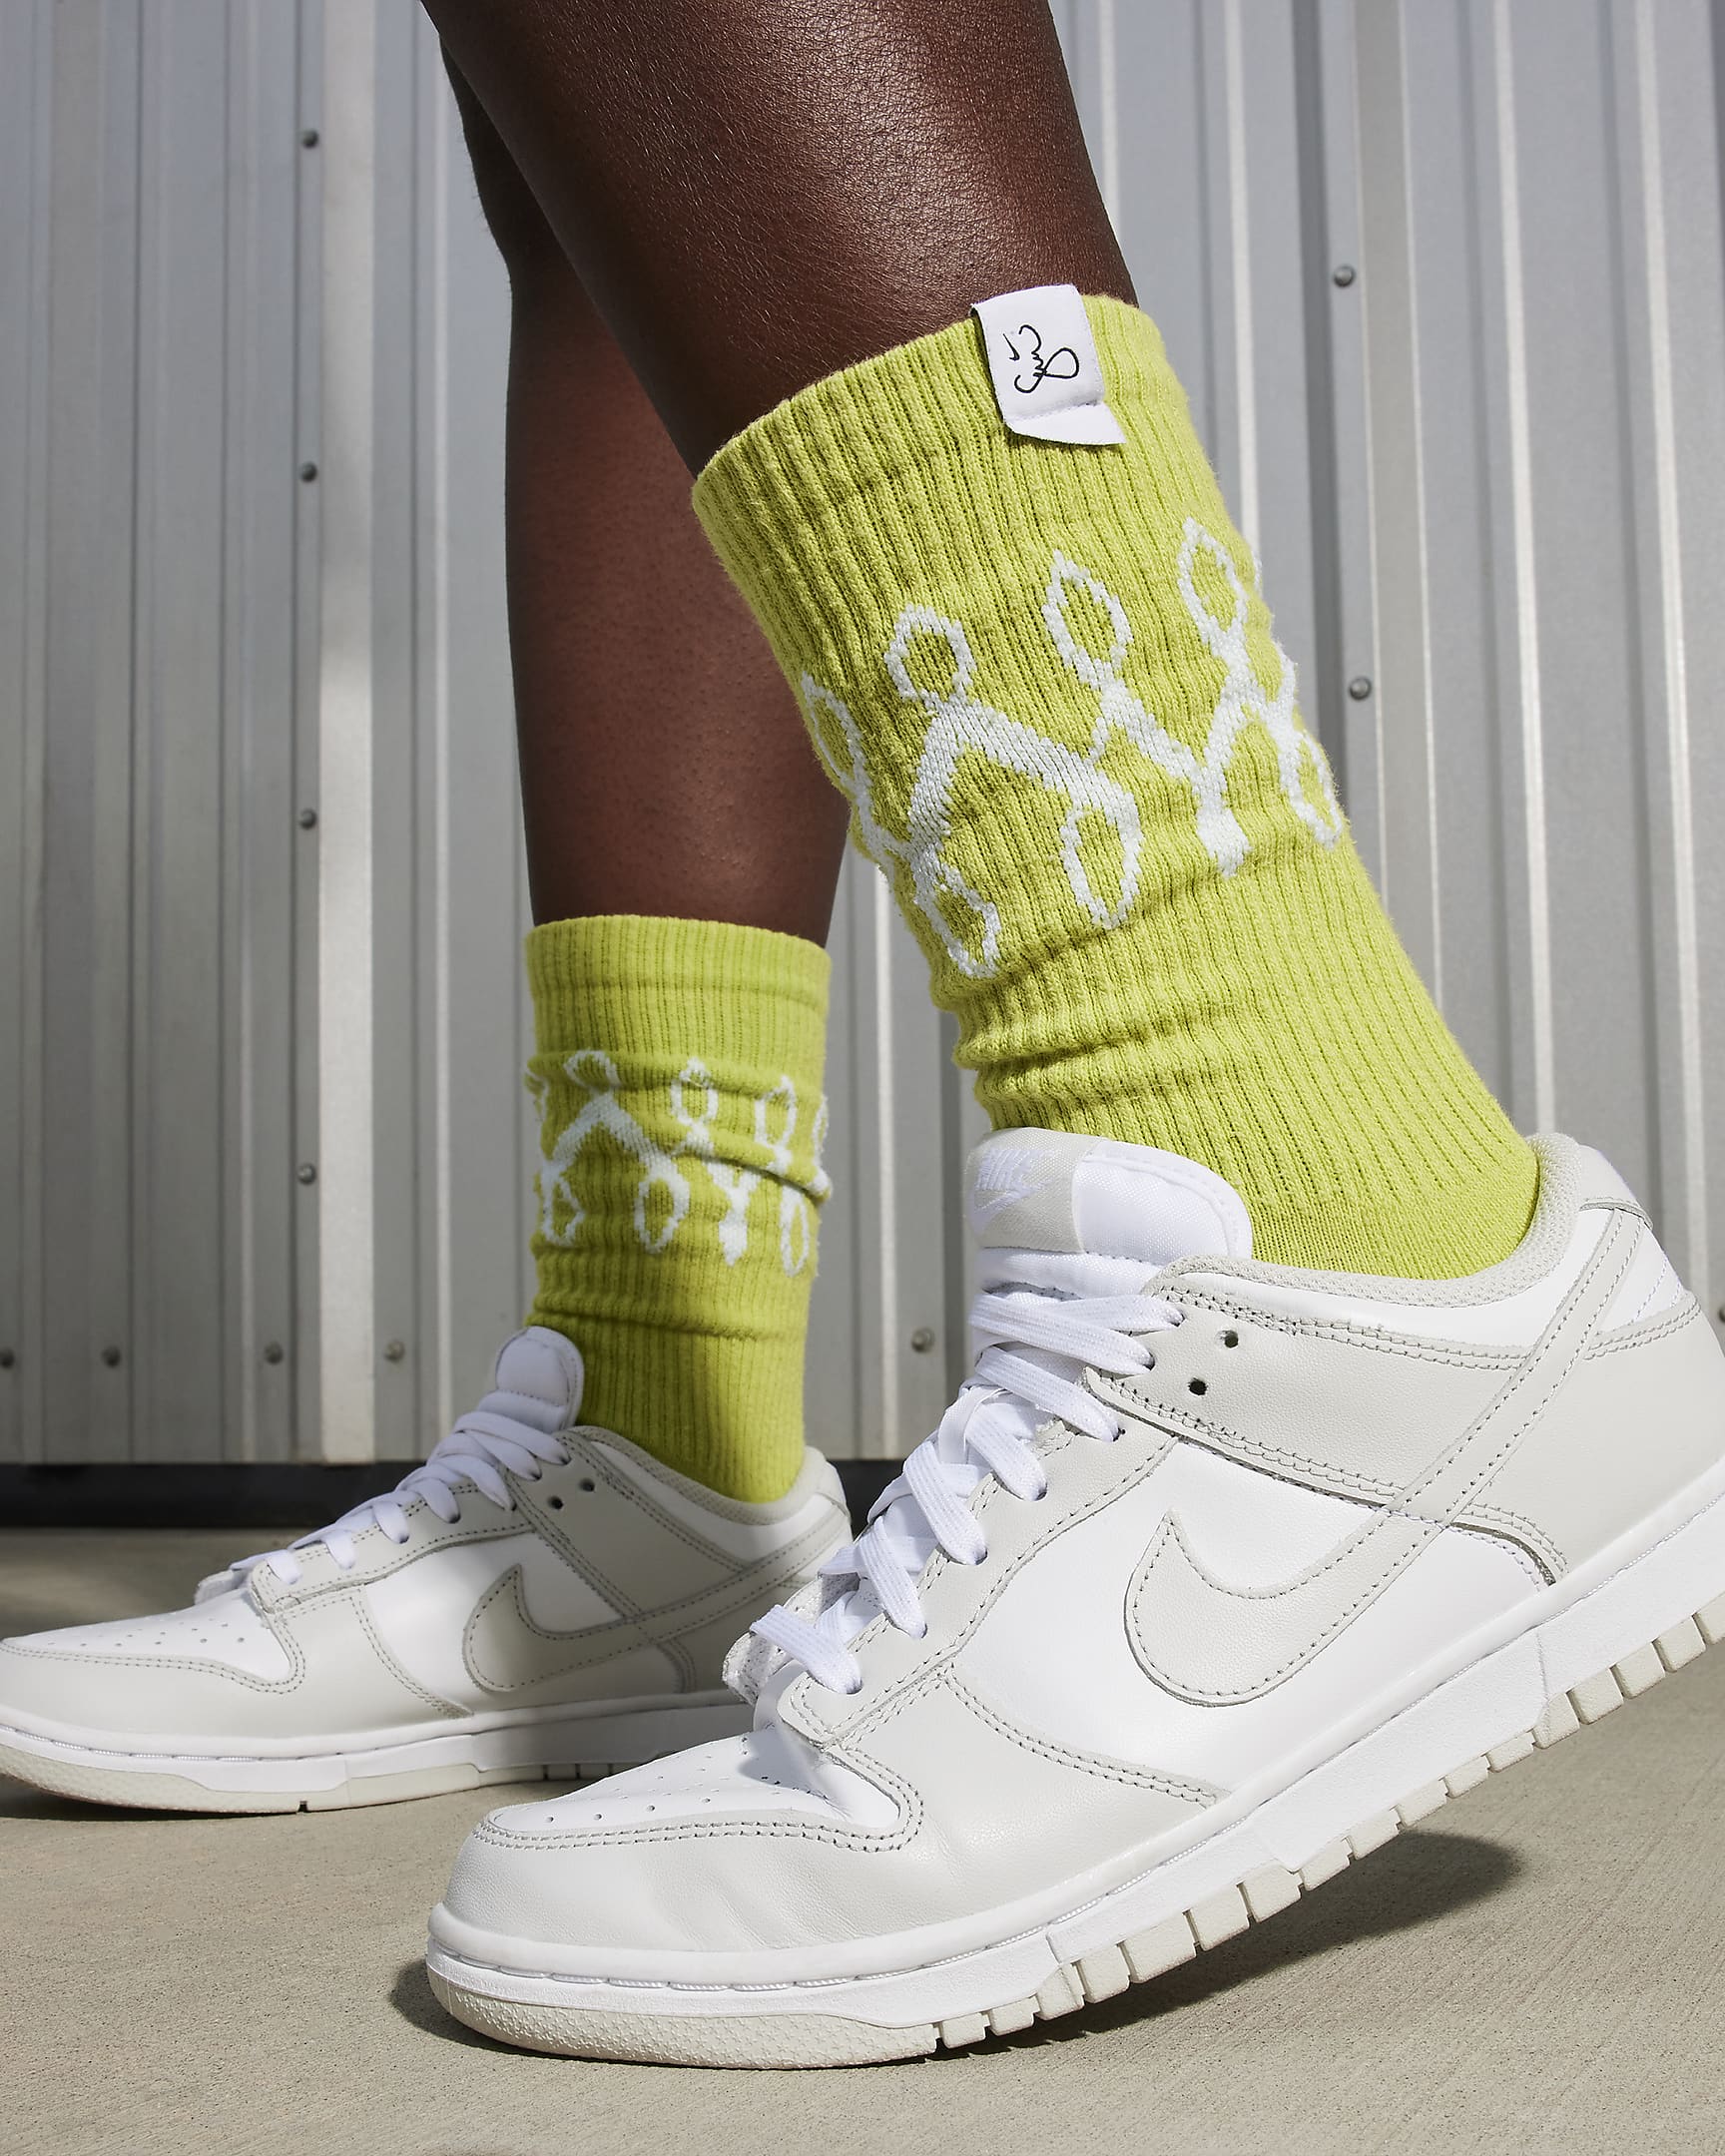 Nike Dunk Low-sko til kvinder - hvid/hvid/Photon Dust